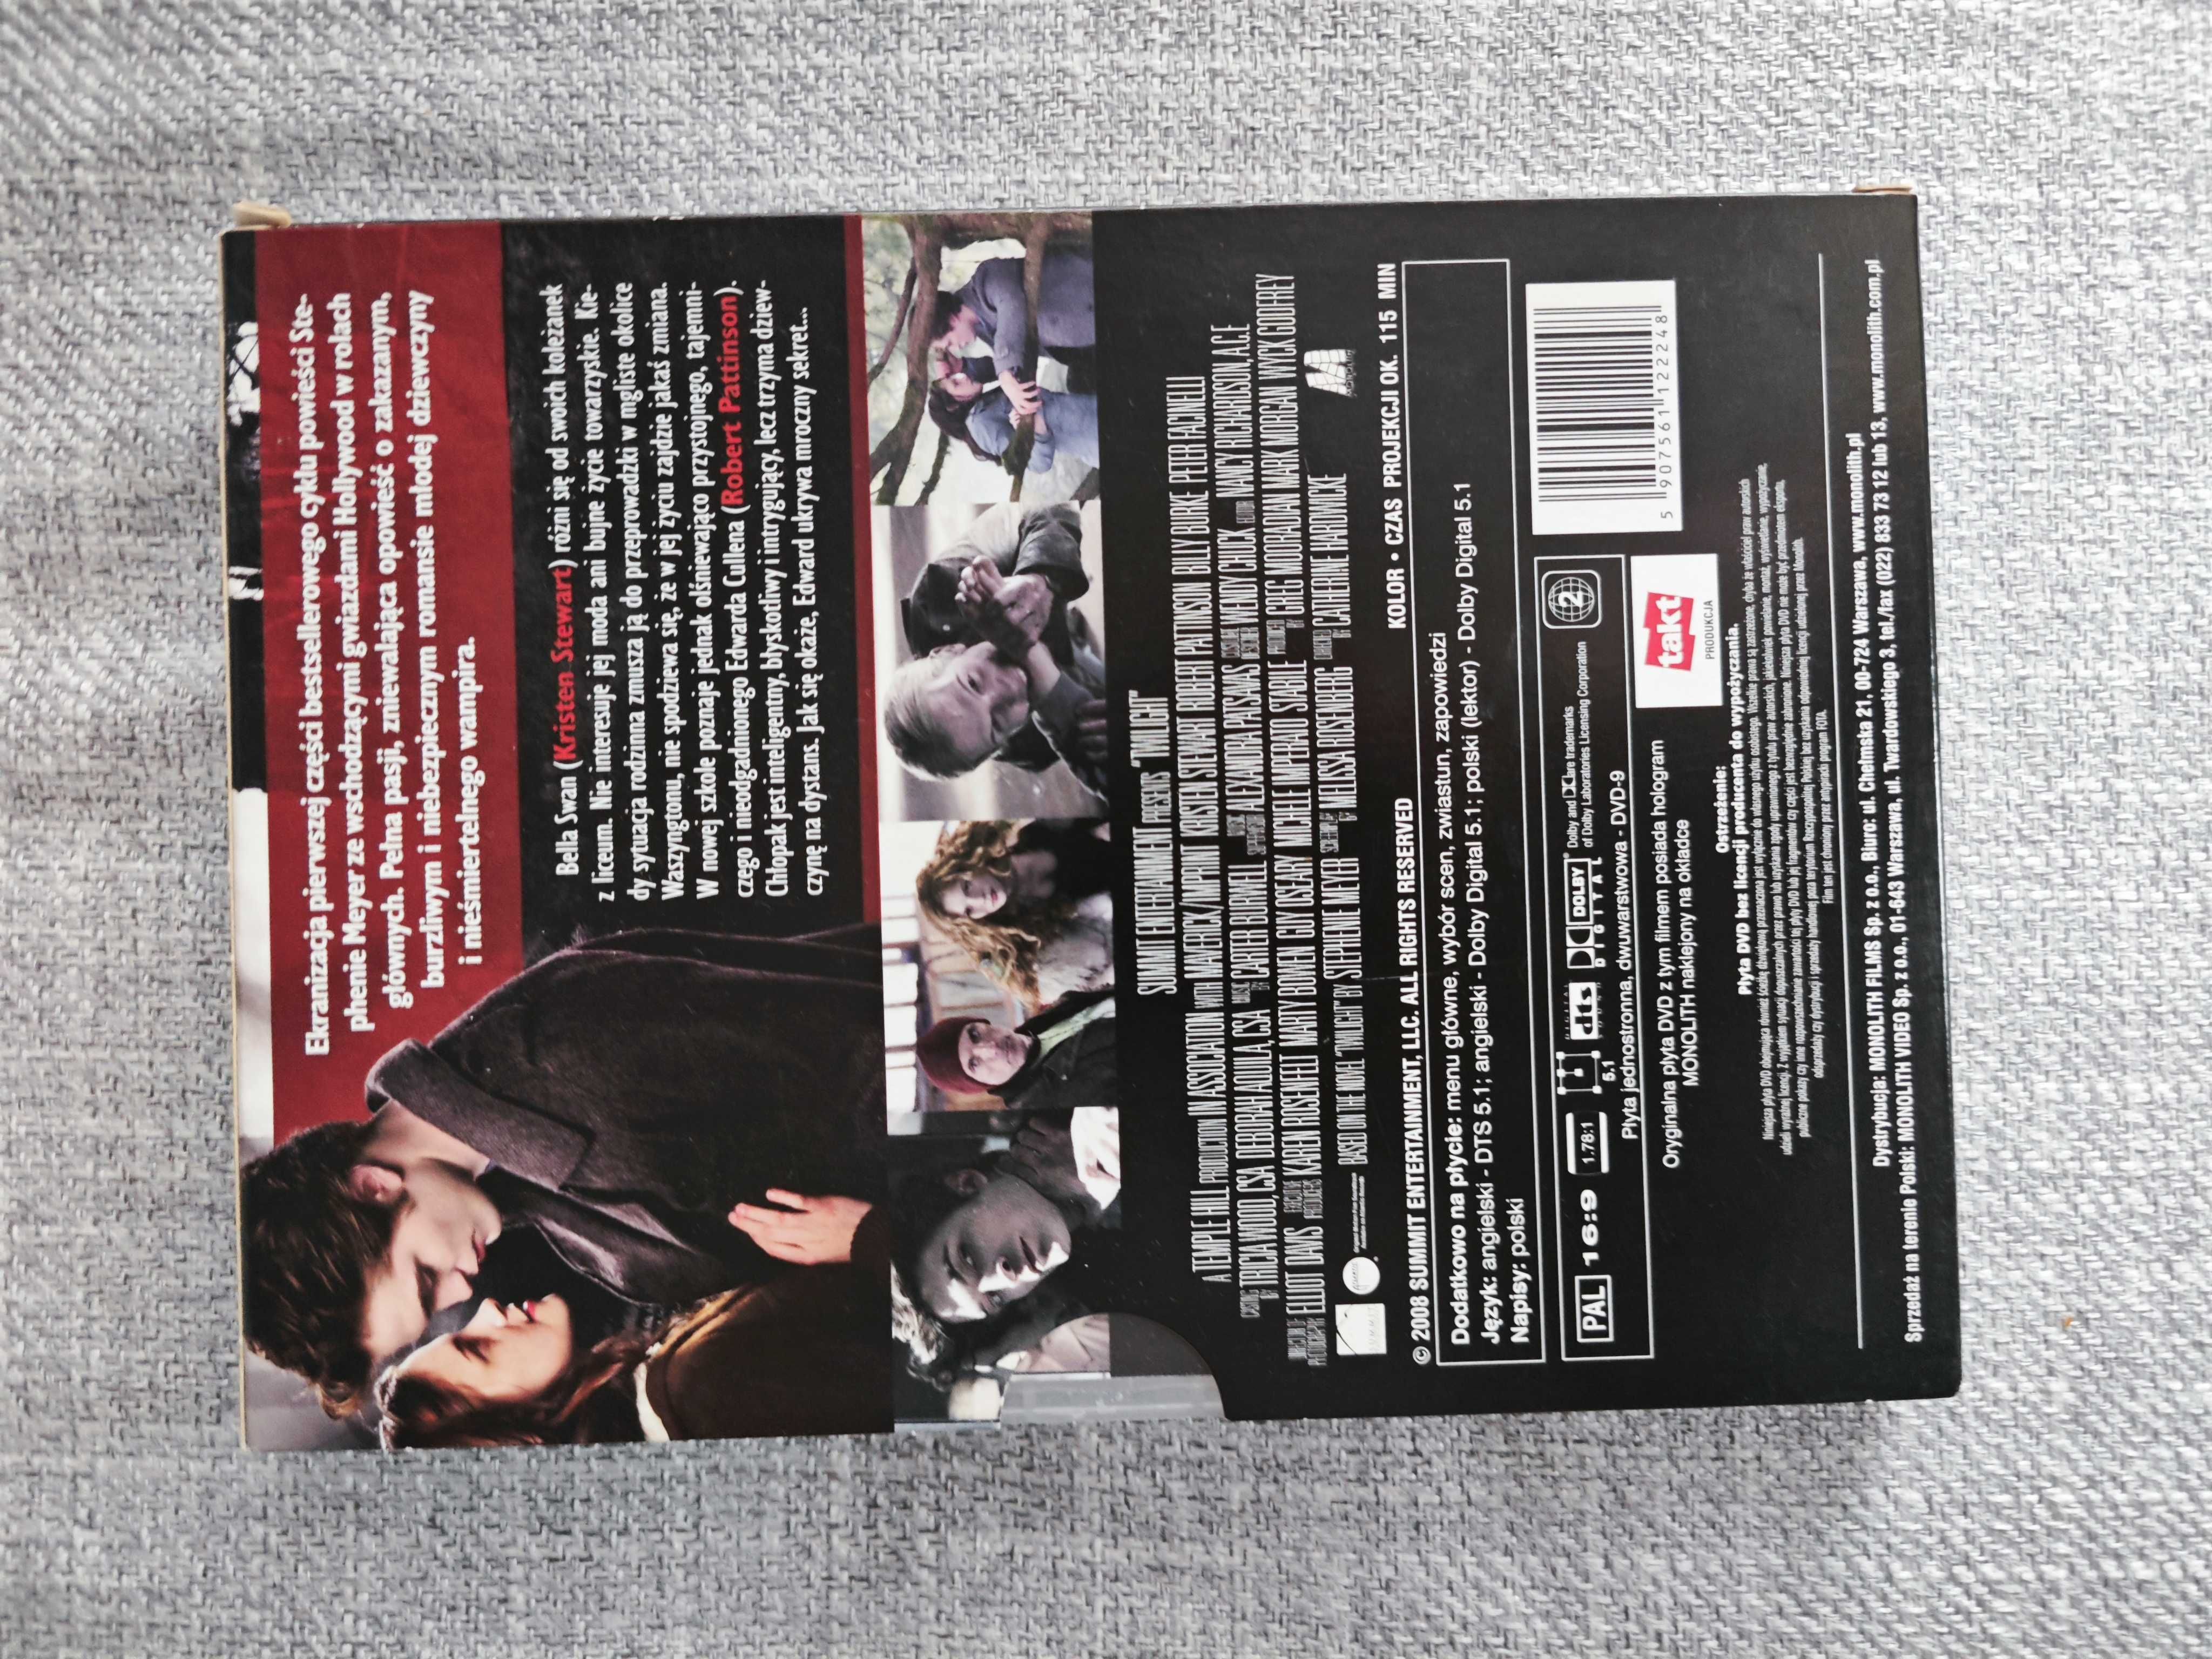 Film Zmierzch DVD